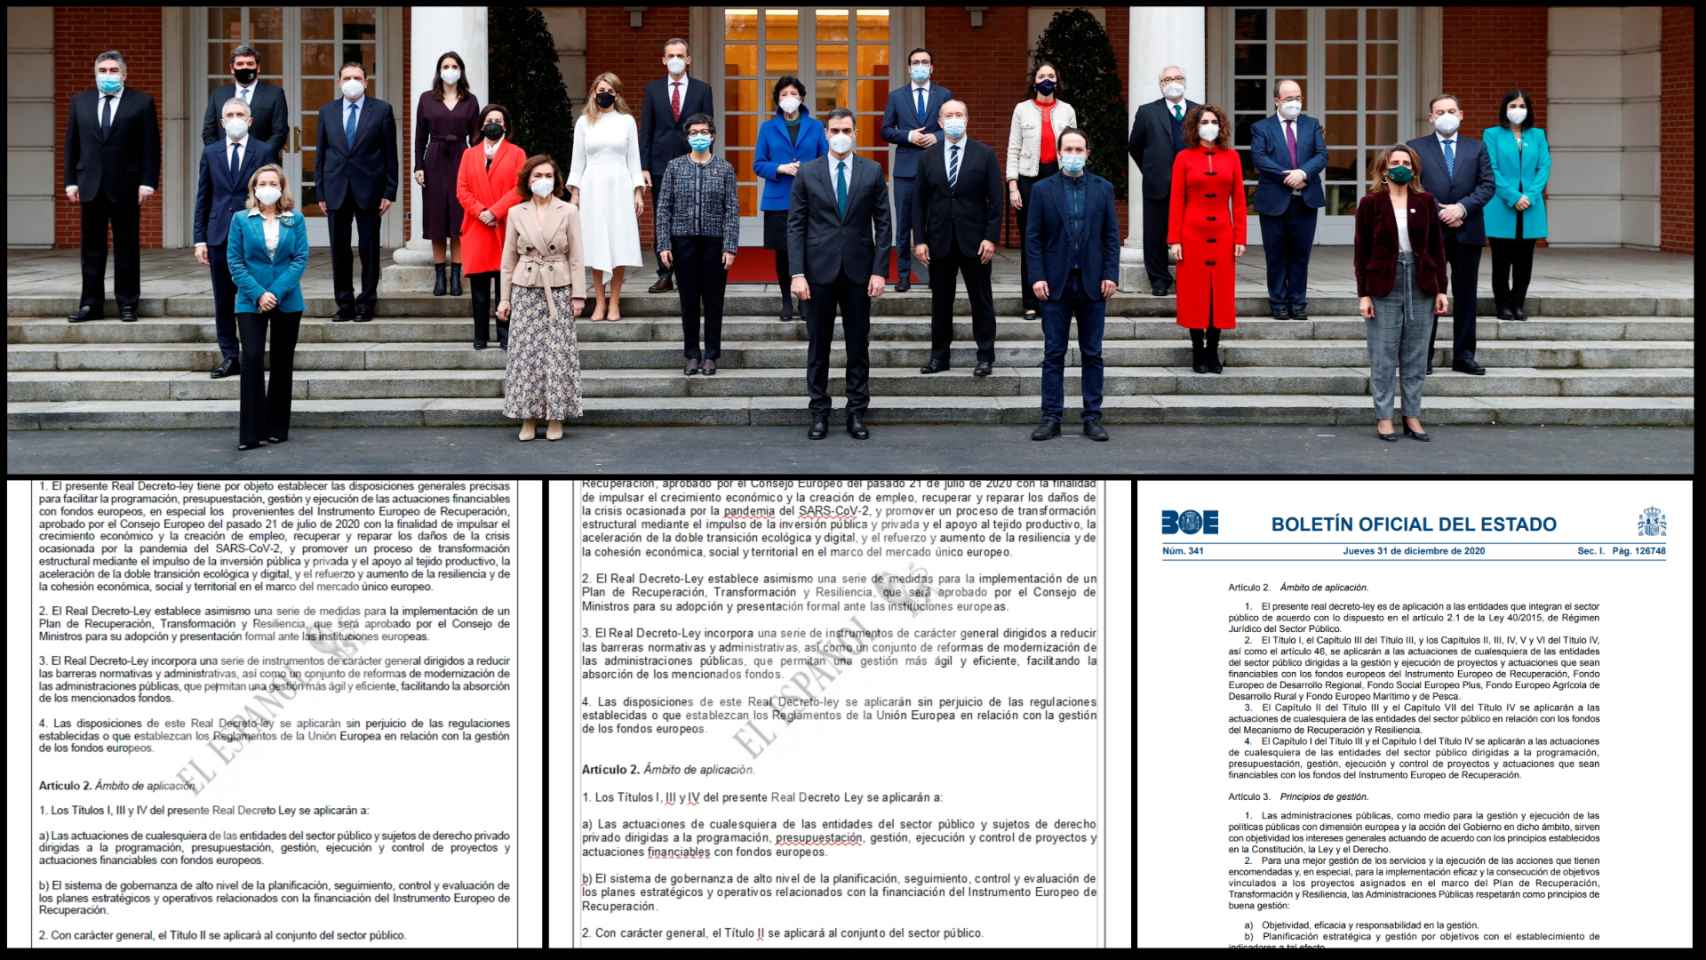 El Gobierno al completo, en las escalinatas de Moncloa. Debajo, el art.2 de los dos borradores y el del decreto final.